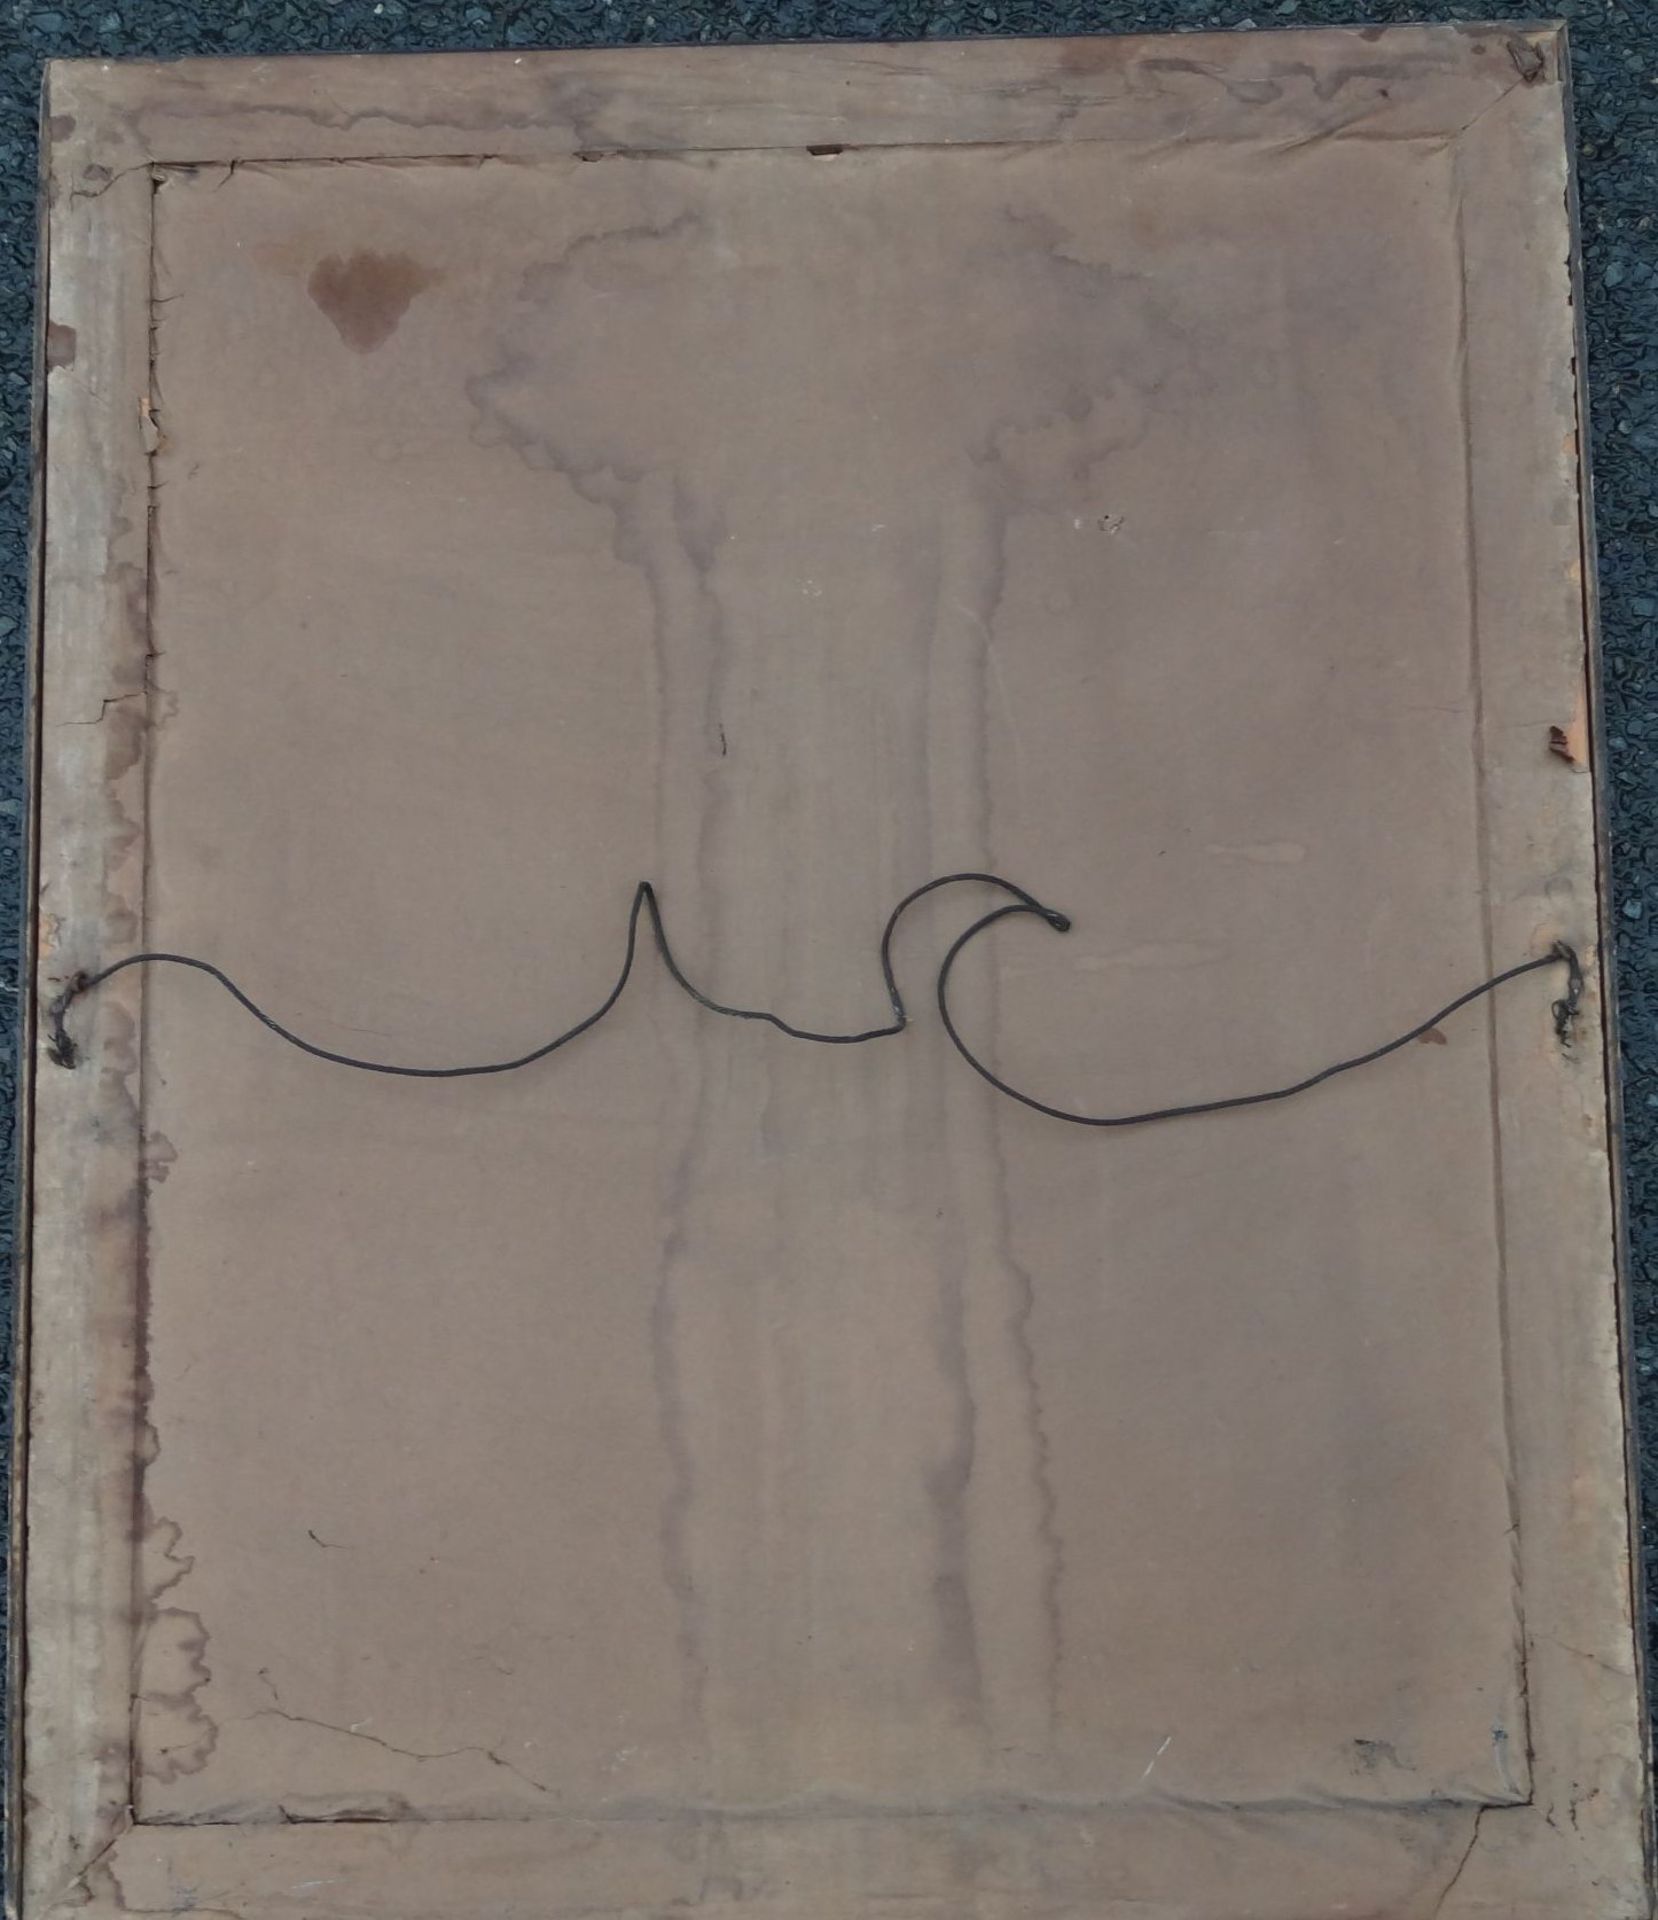 gr. Kunstdruck "Antreten zum Gebet" nach. W. Kaempf, Karfreitag 1915,alt ger/Glas, RG 76x62 cm - Bild 5 aus 5